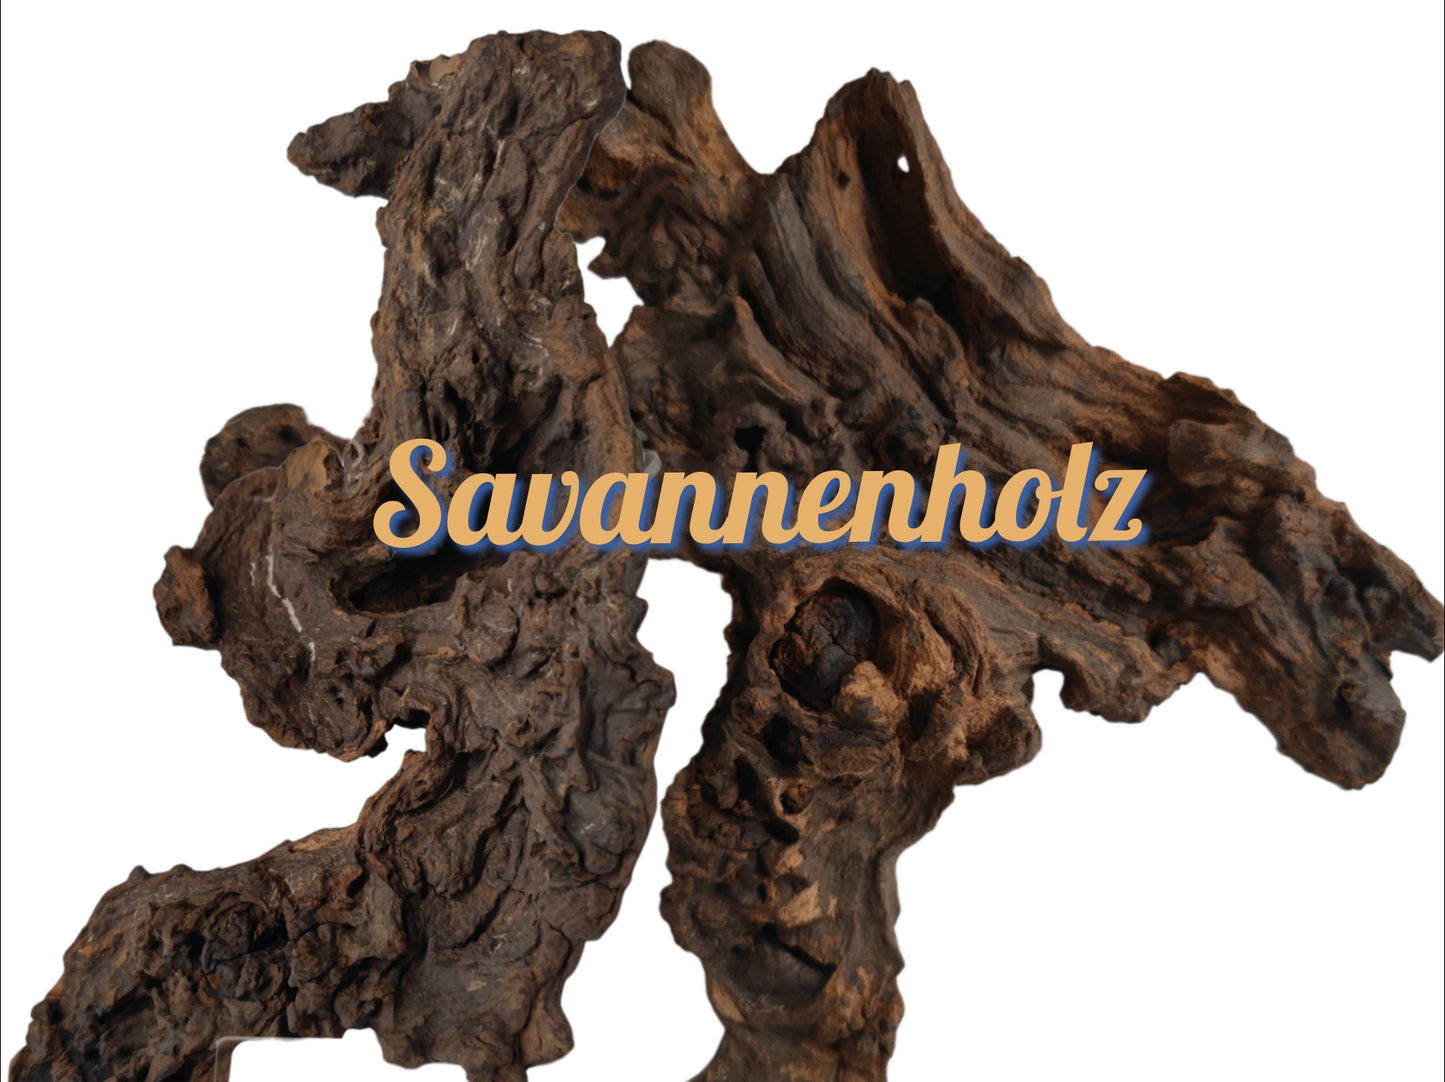 Savanna wood